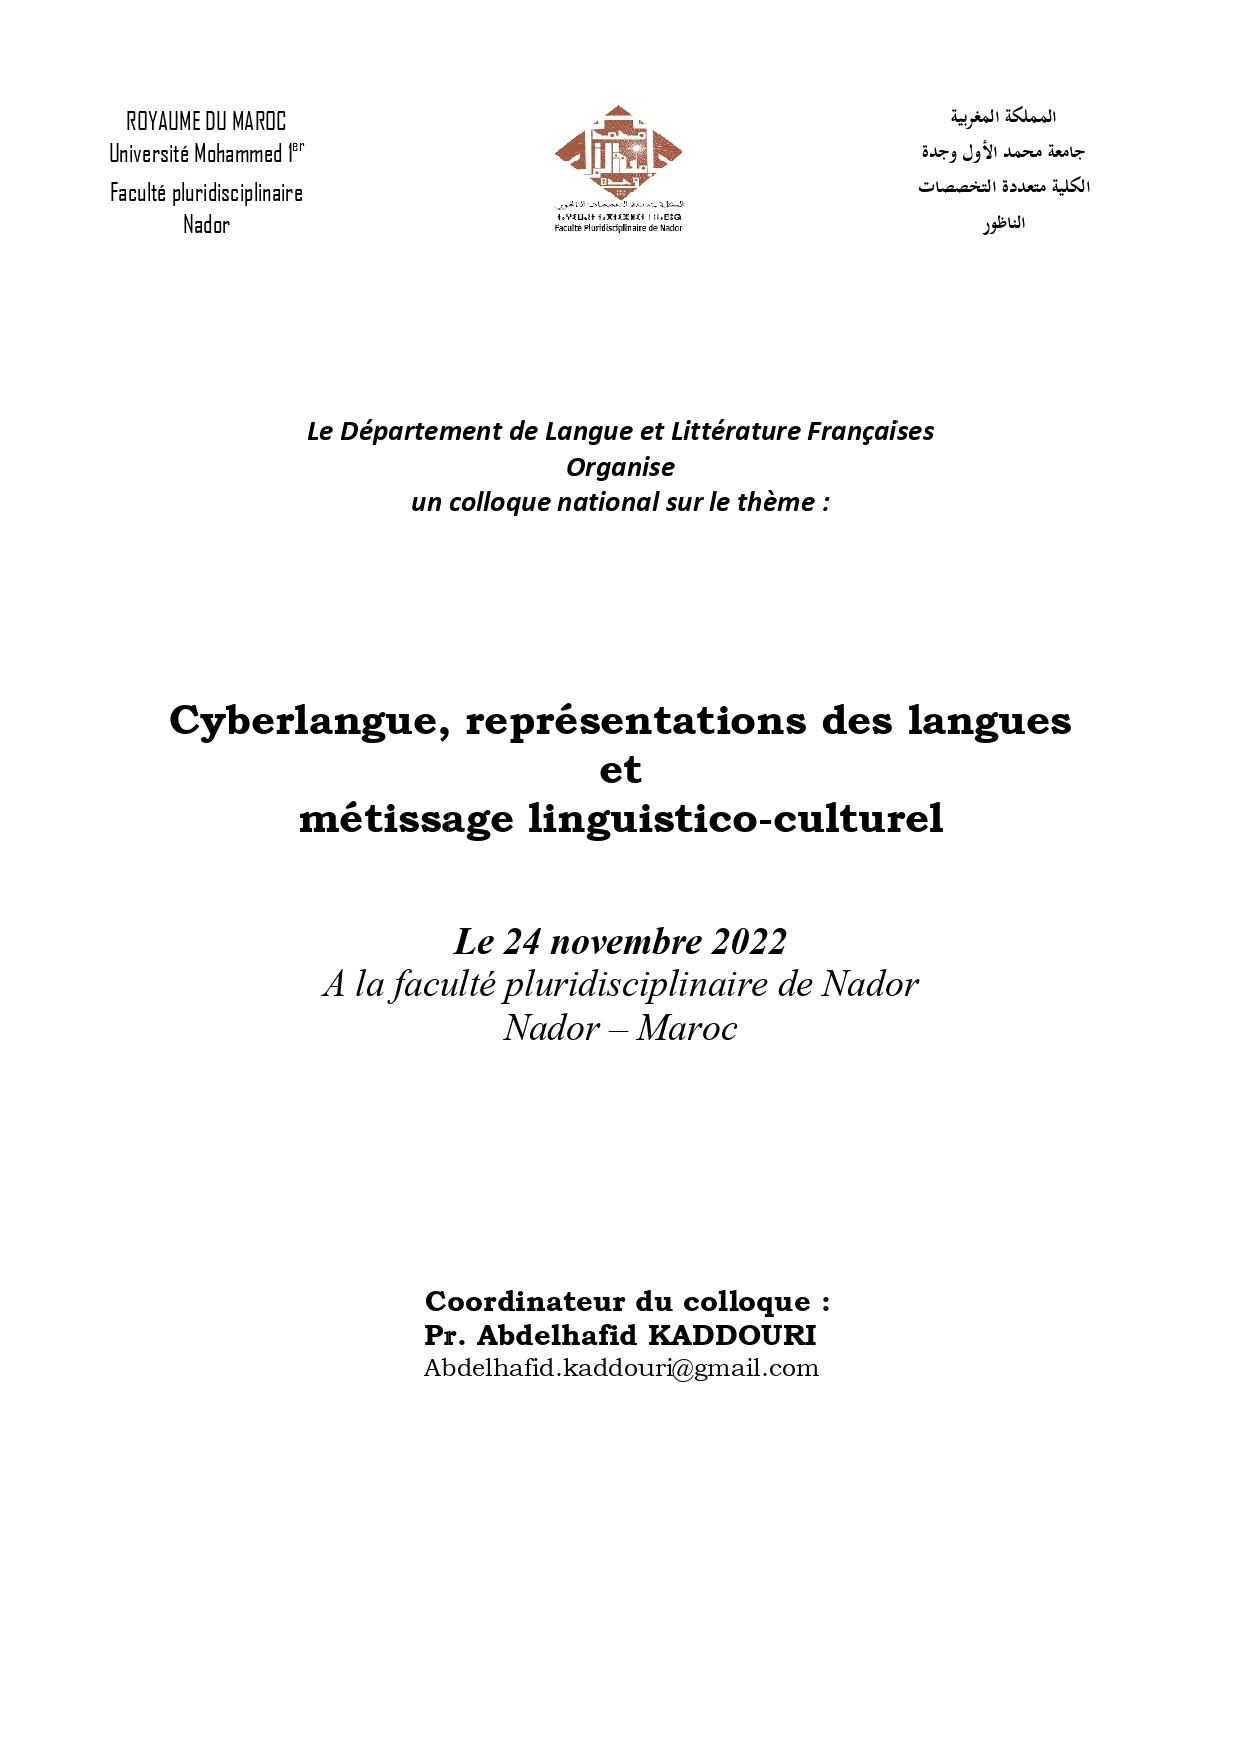 Colloque national sur le thème : Cyberlangue, représentations des langues métissage linguistico-culturel